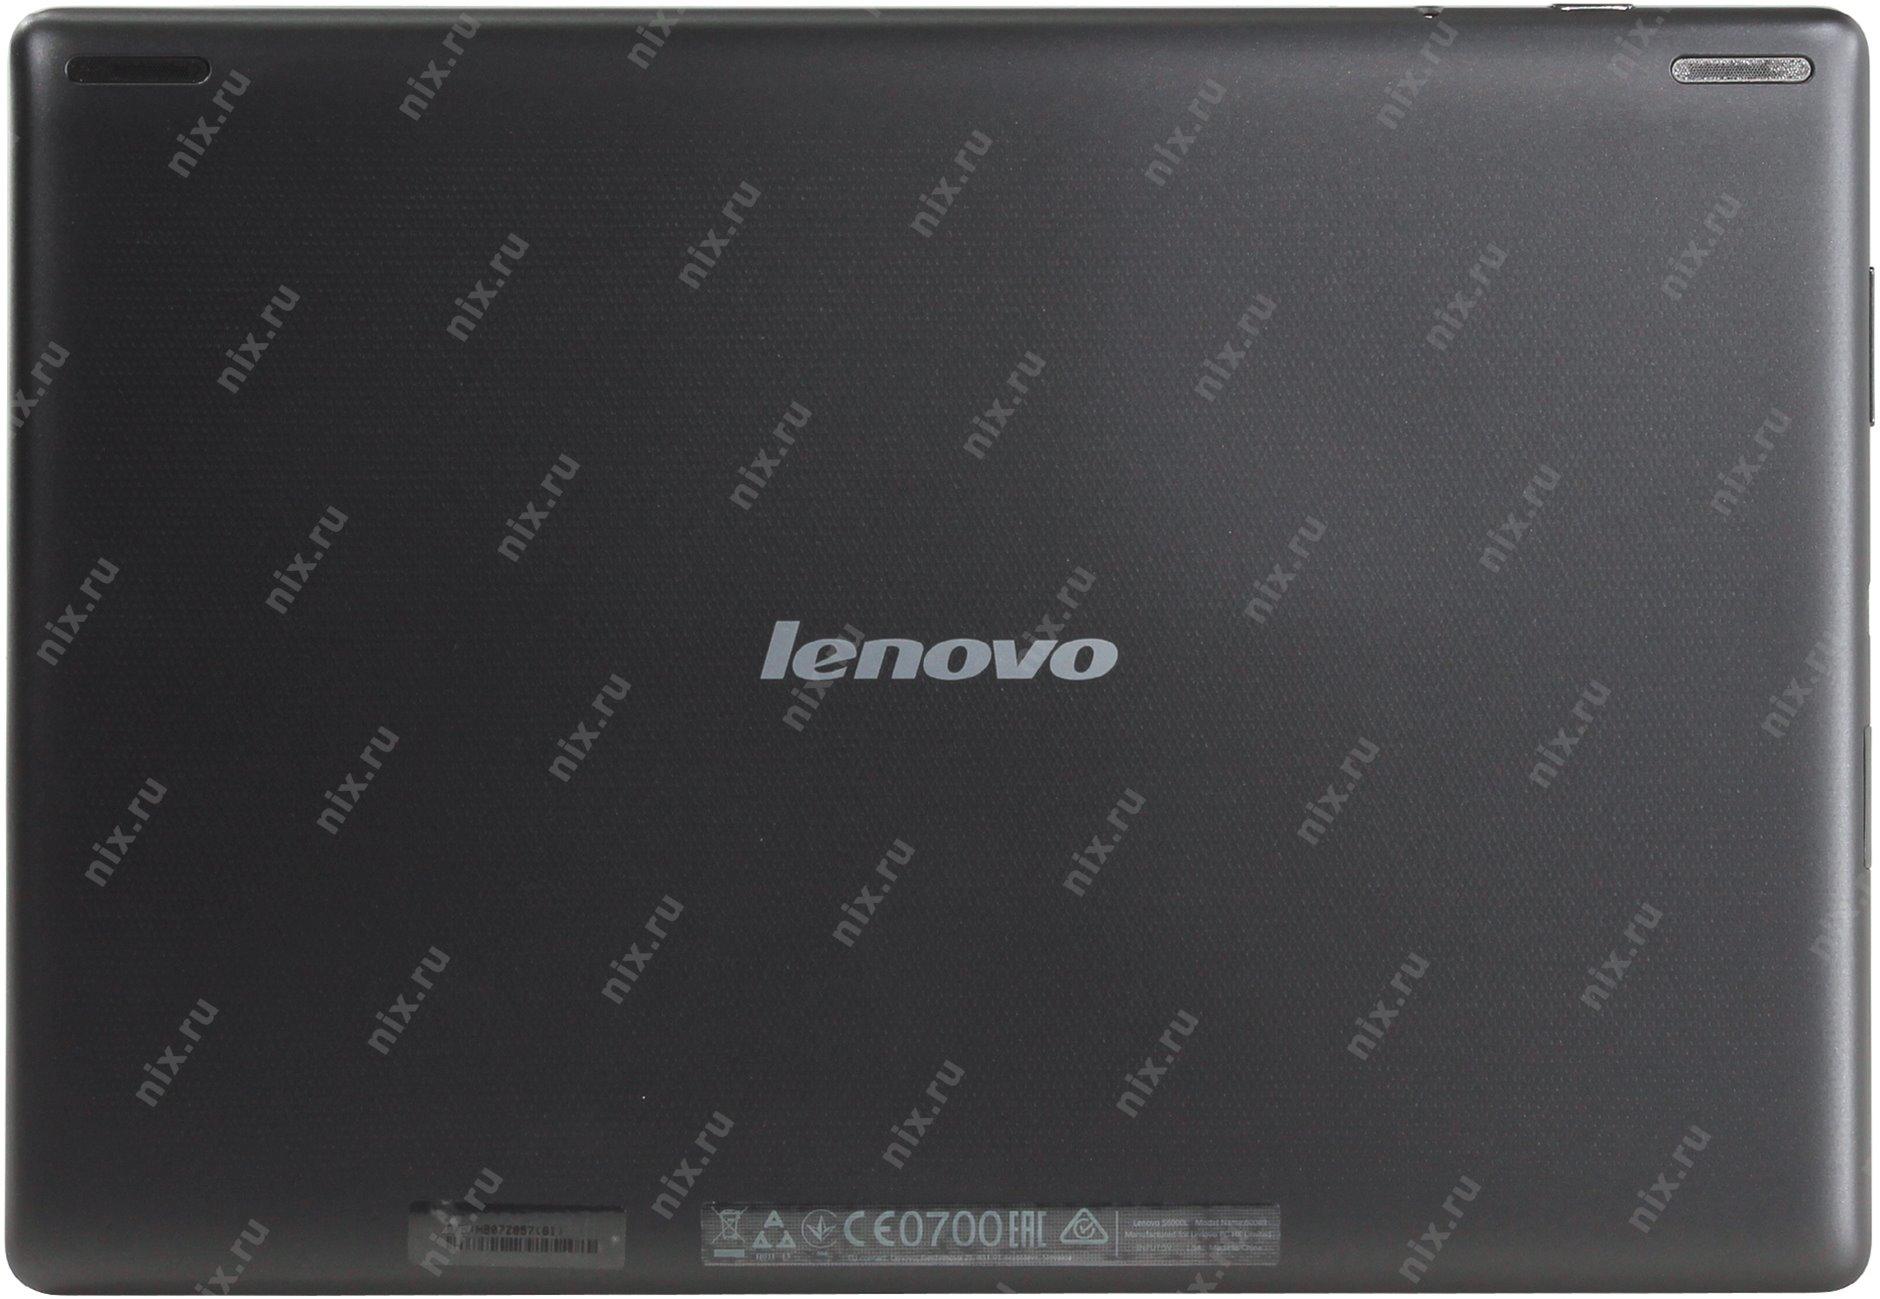 Lenovo ideatab s6000 16gb отзывы покупателей и специалистов на отзовик